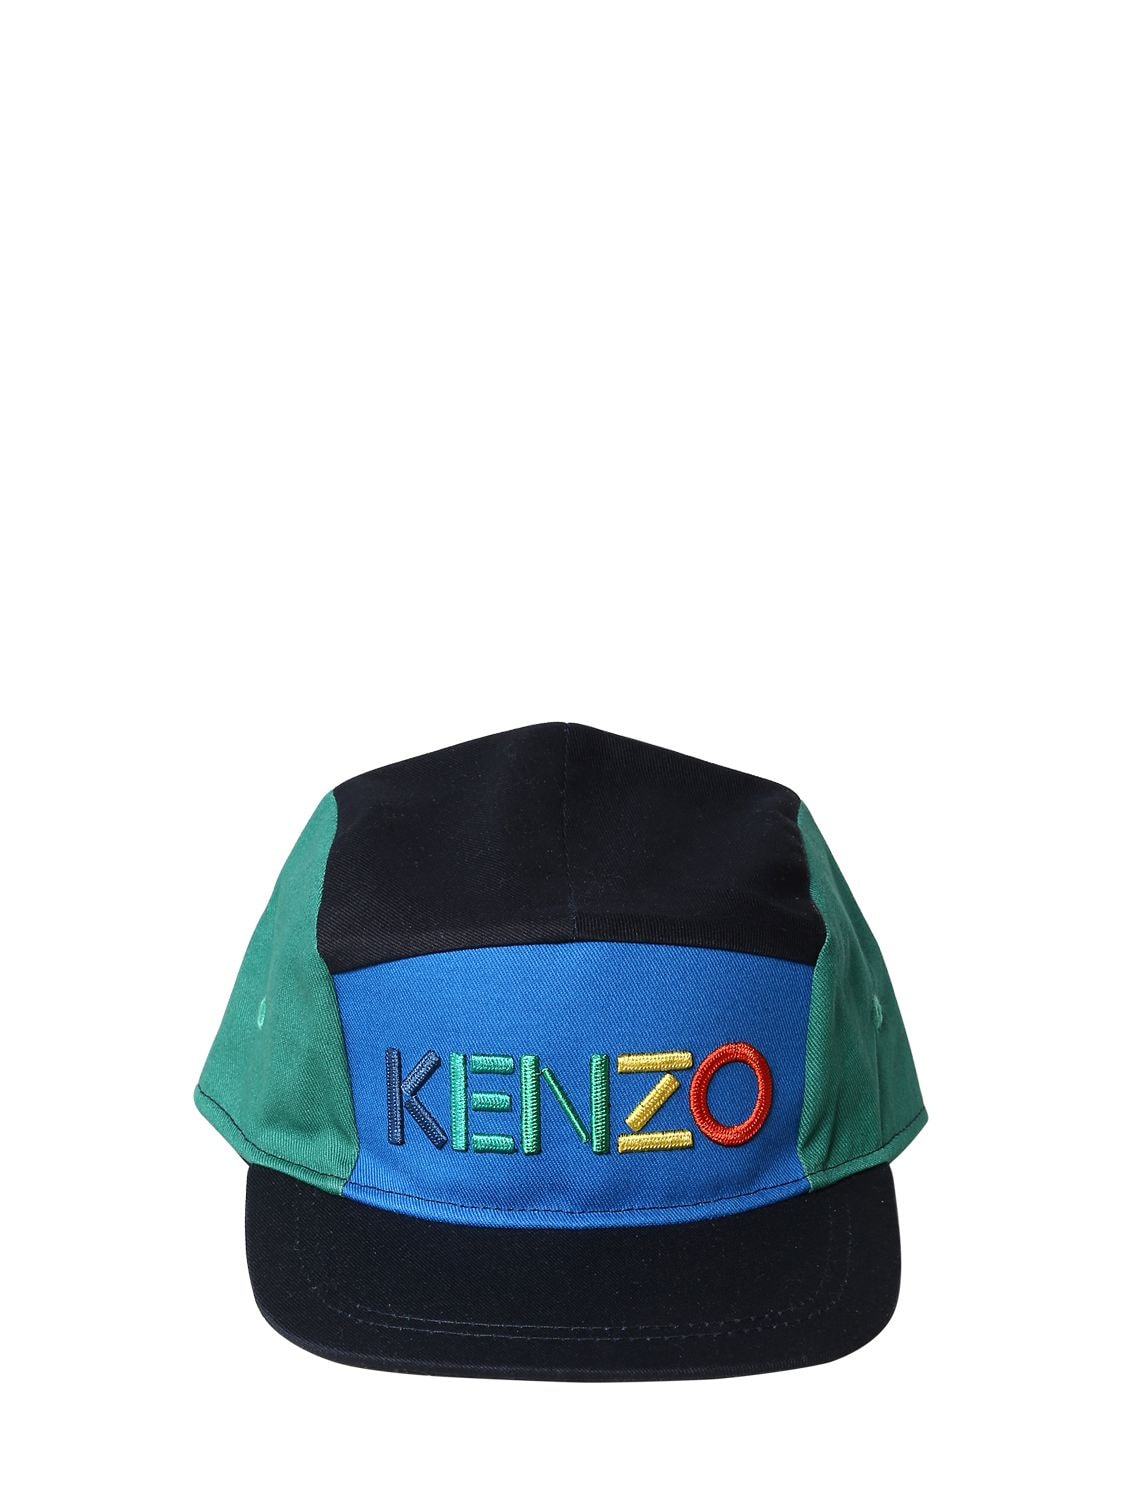 KENZO LOGO刺绣纯棉华达呢帽子,70IOEH109-MDQ1